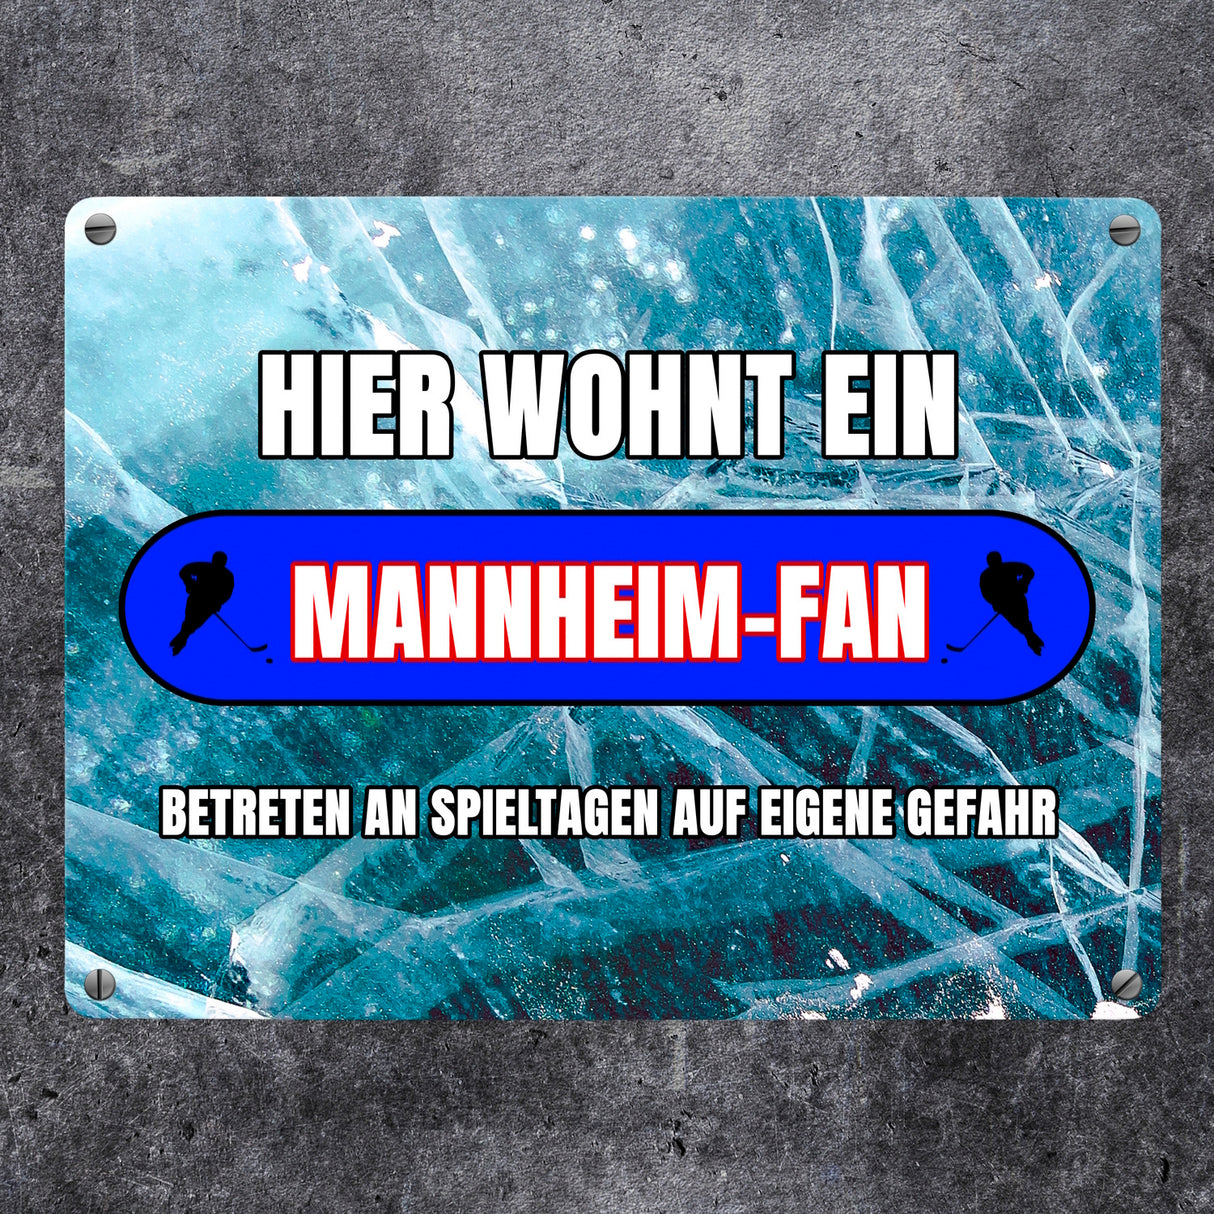 Hier wohnt ein Mannheim-Fan Metallschild in 15x20 cm mit Eishallen Boden-Motiv